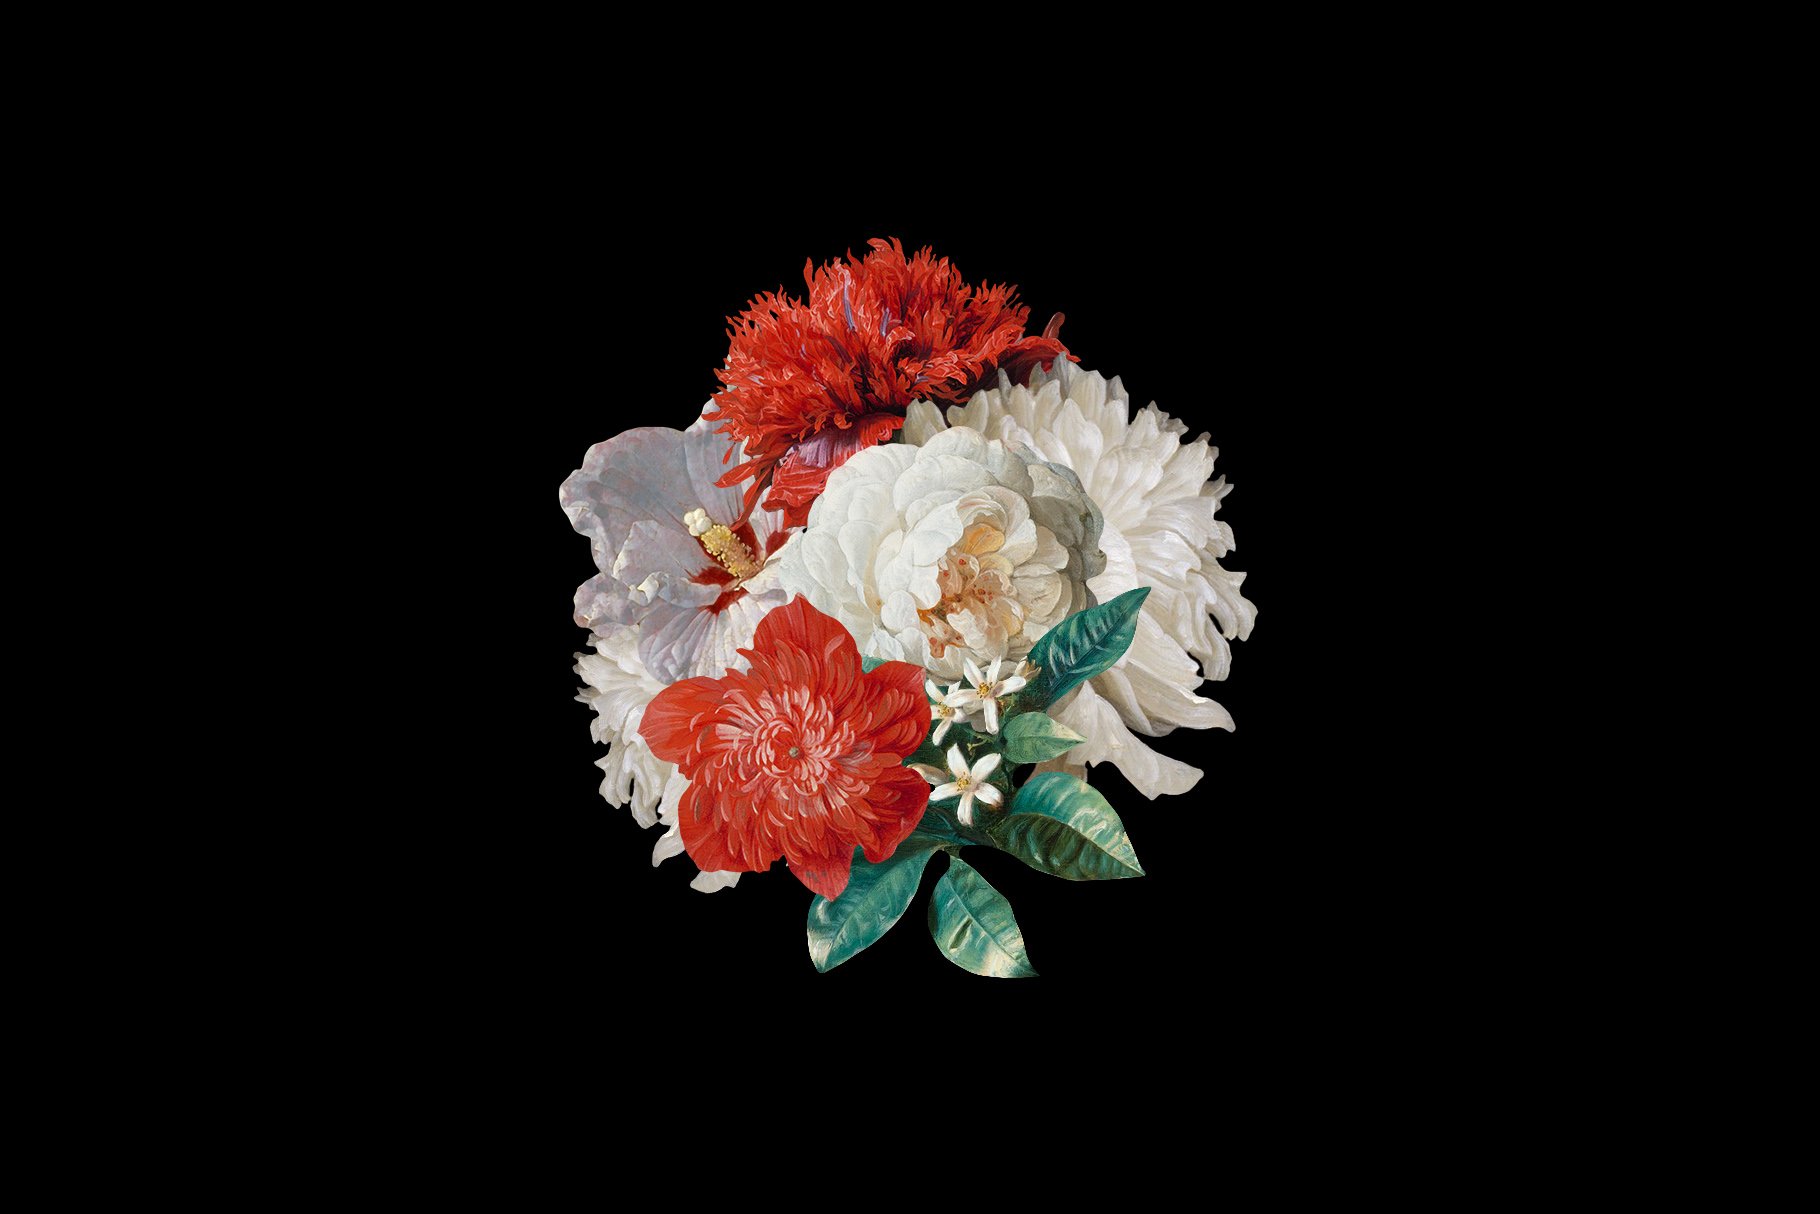 100多种复古花卉古典艺术品图像集合 Kurohana – Moody Florals Collection 图片素材 第8张